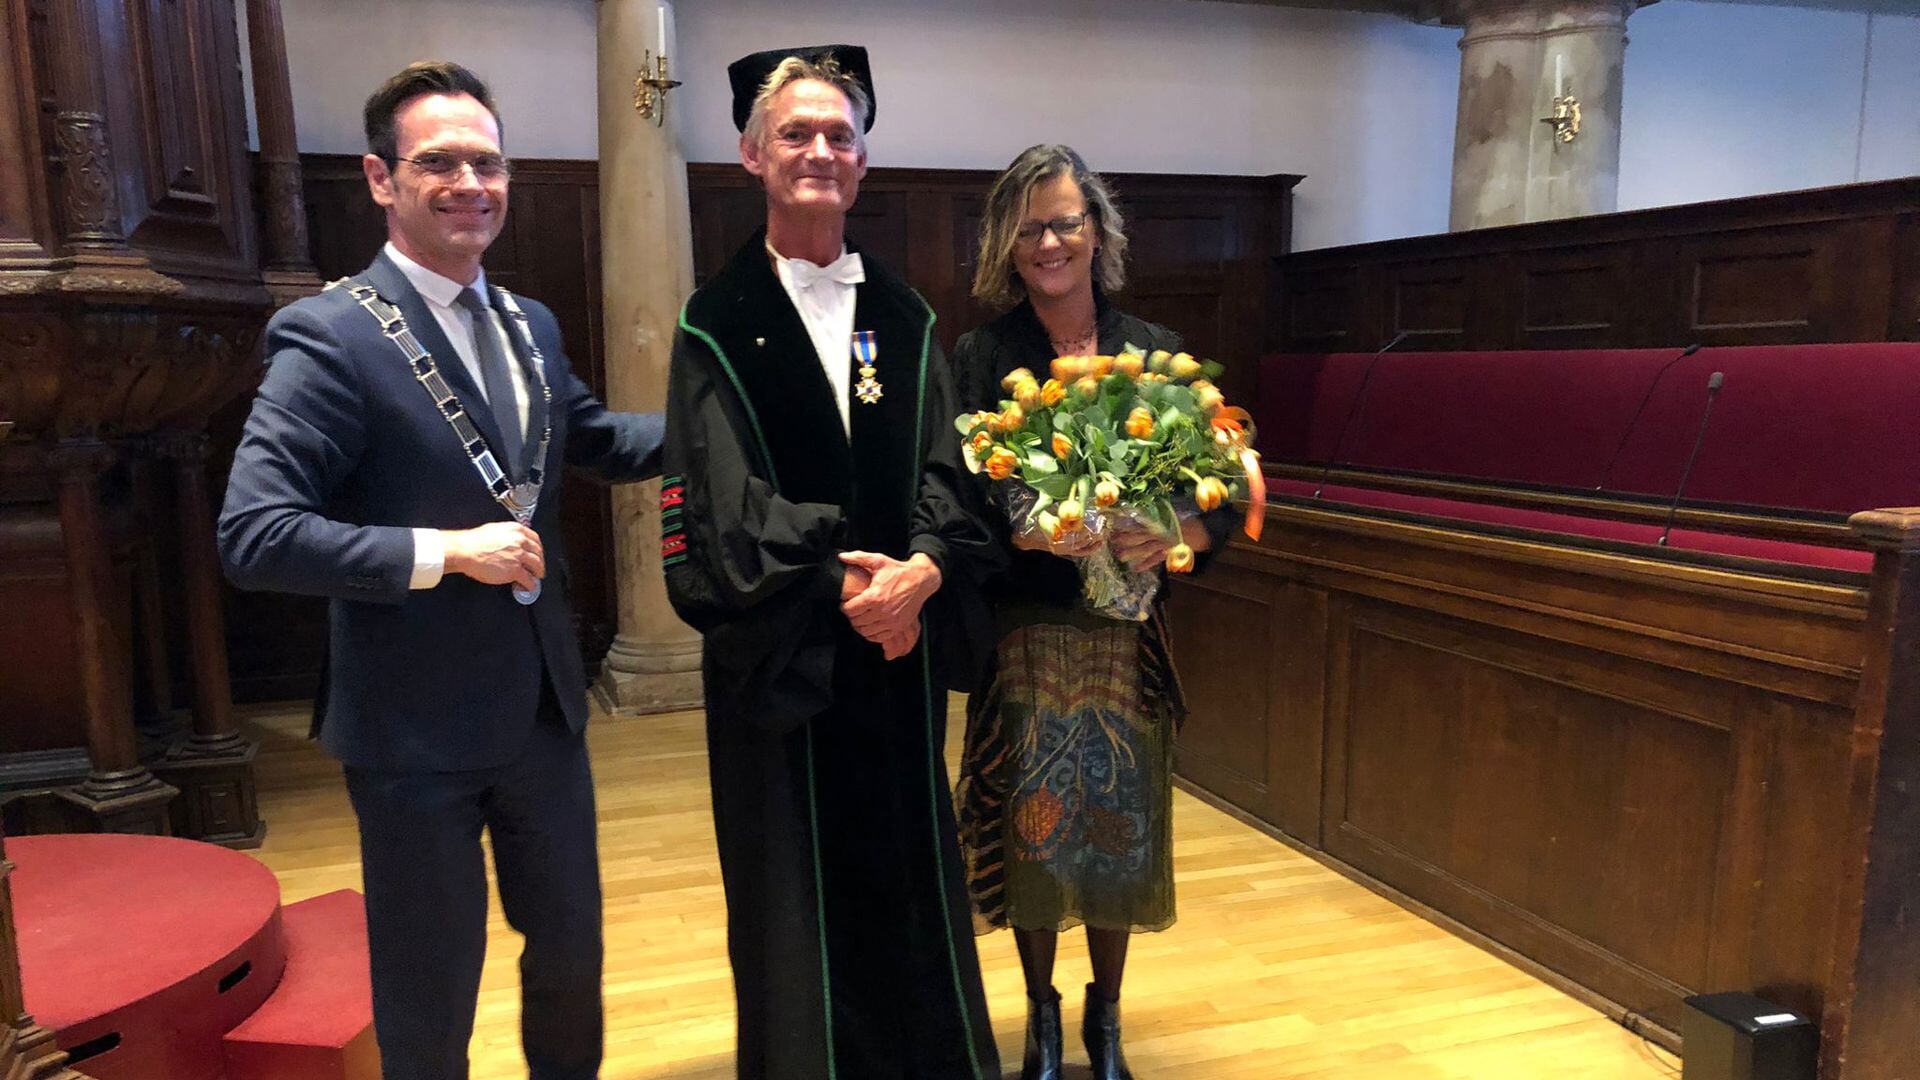 Burgemeester Sjoerd Potters reikte aan Prof. dr. Ad de Jongh de Koninklijke Onderscheiding Ridder in de Orde van de Nederlandse Leeuw uit. (foto gem. De Bilt)